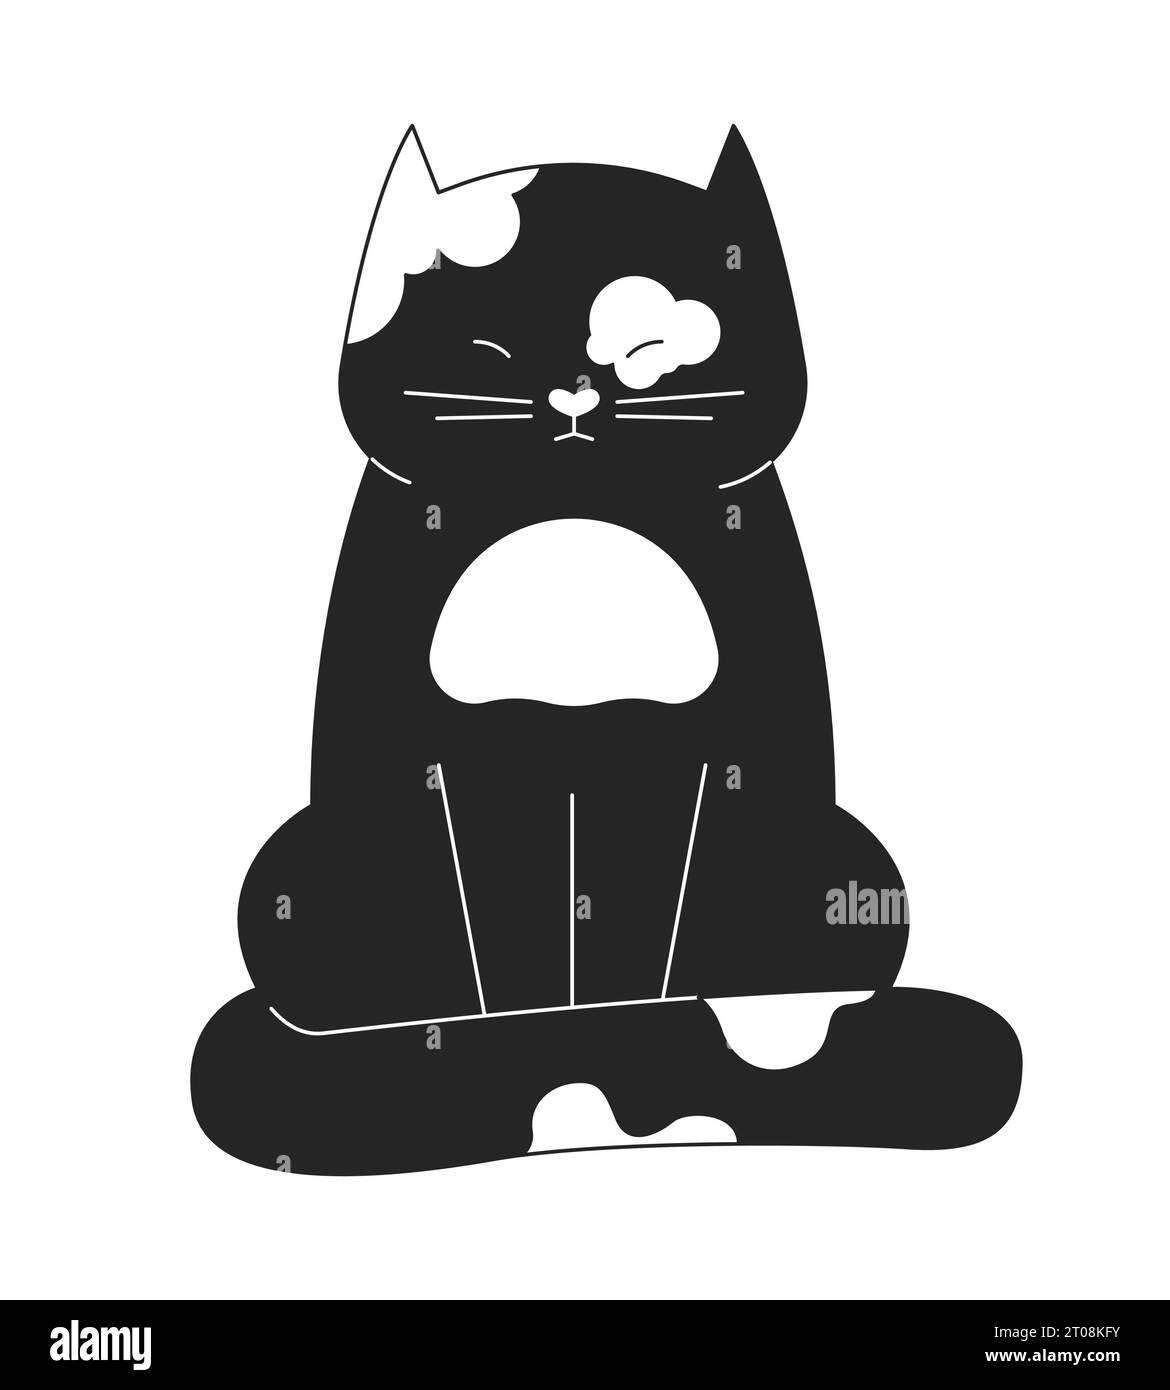 Cucciolo di gatto sonnacchiante con occhi in 2D in bianco e nero Illustrazione Vettoriale